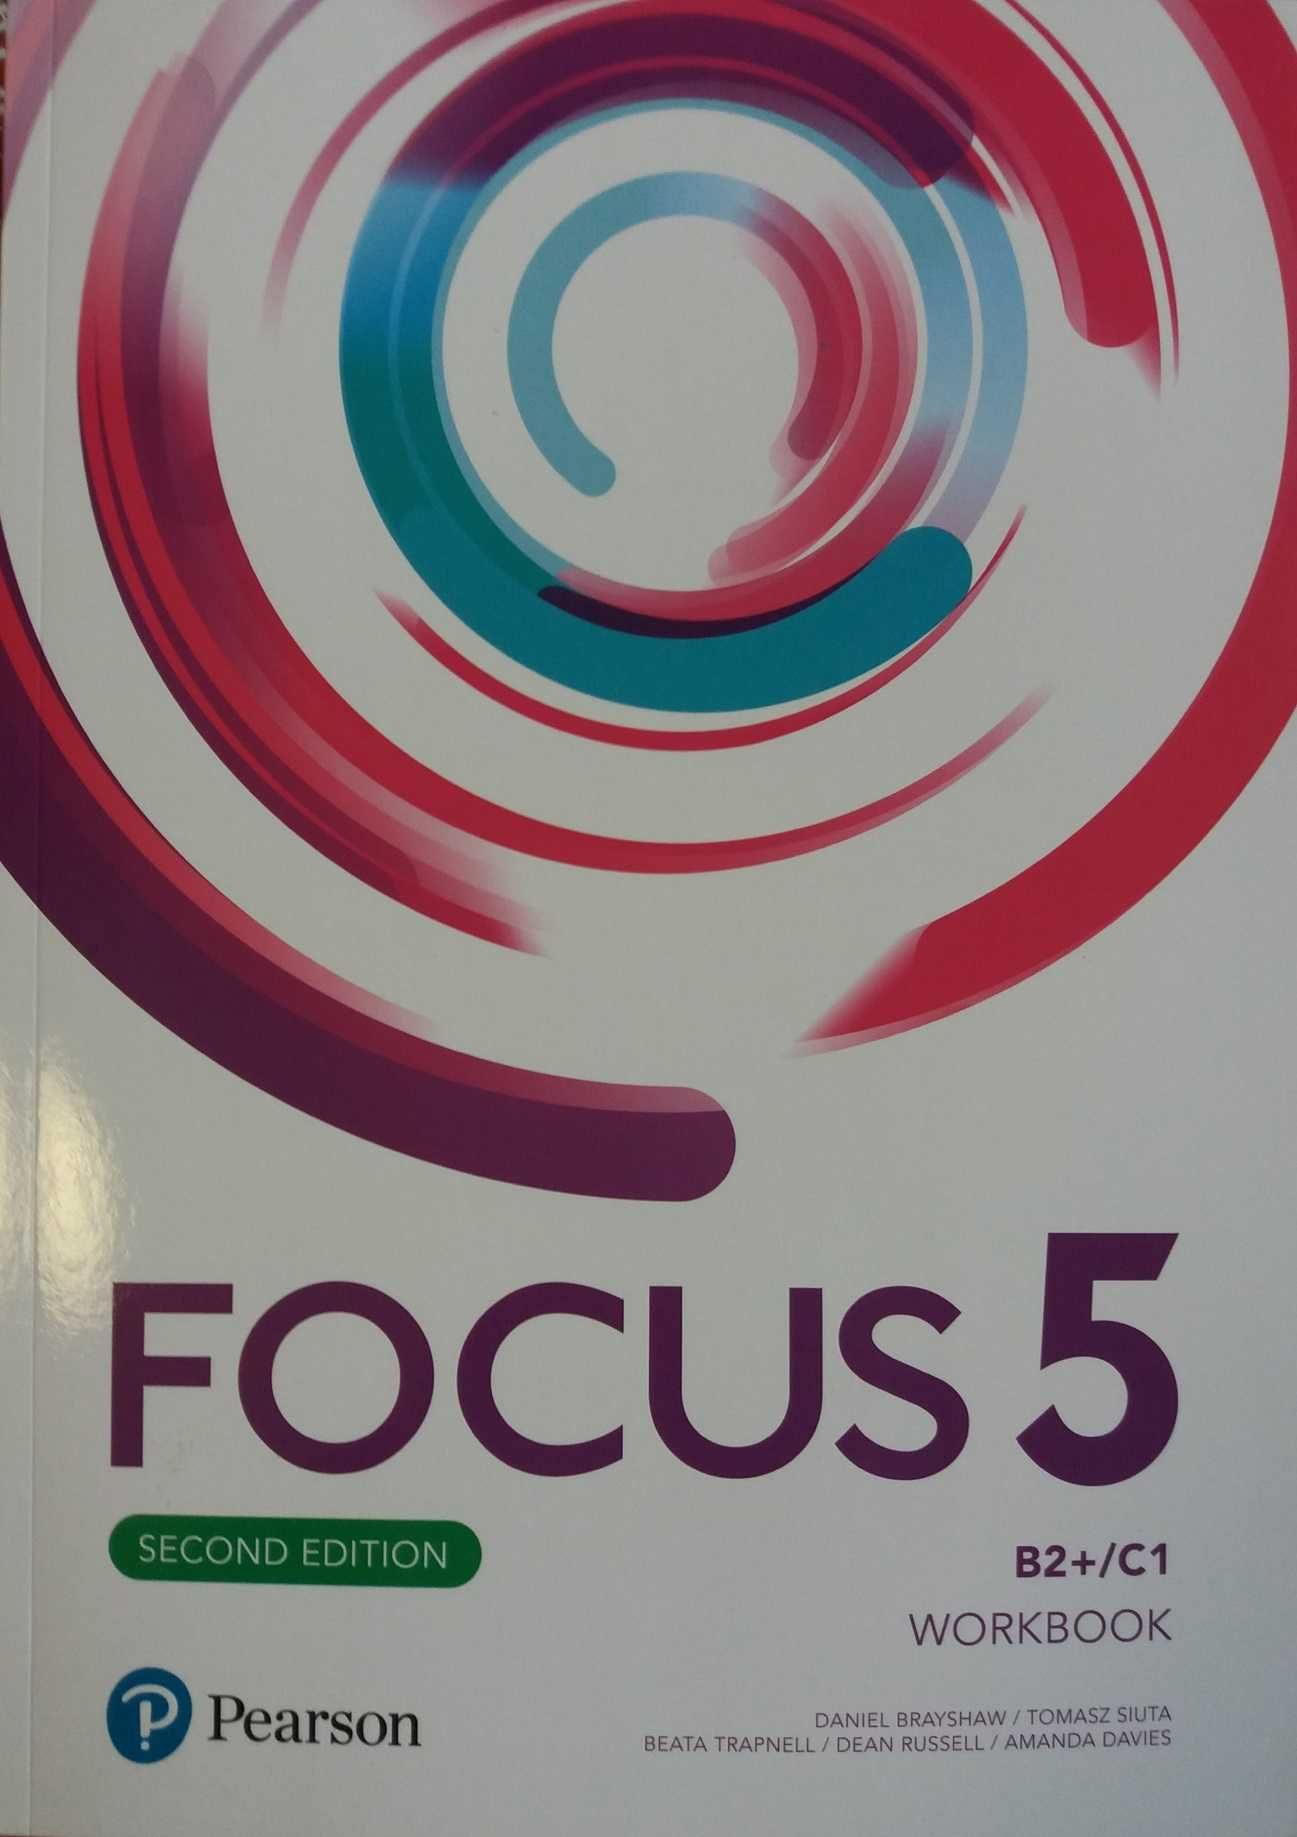 Focus 5 2ed. Workbook + Kompendium maturalne + kod. Pearson